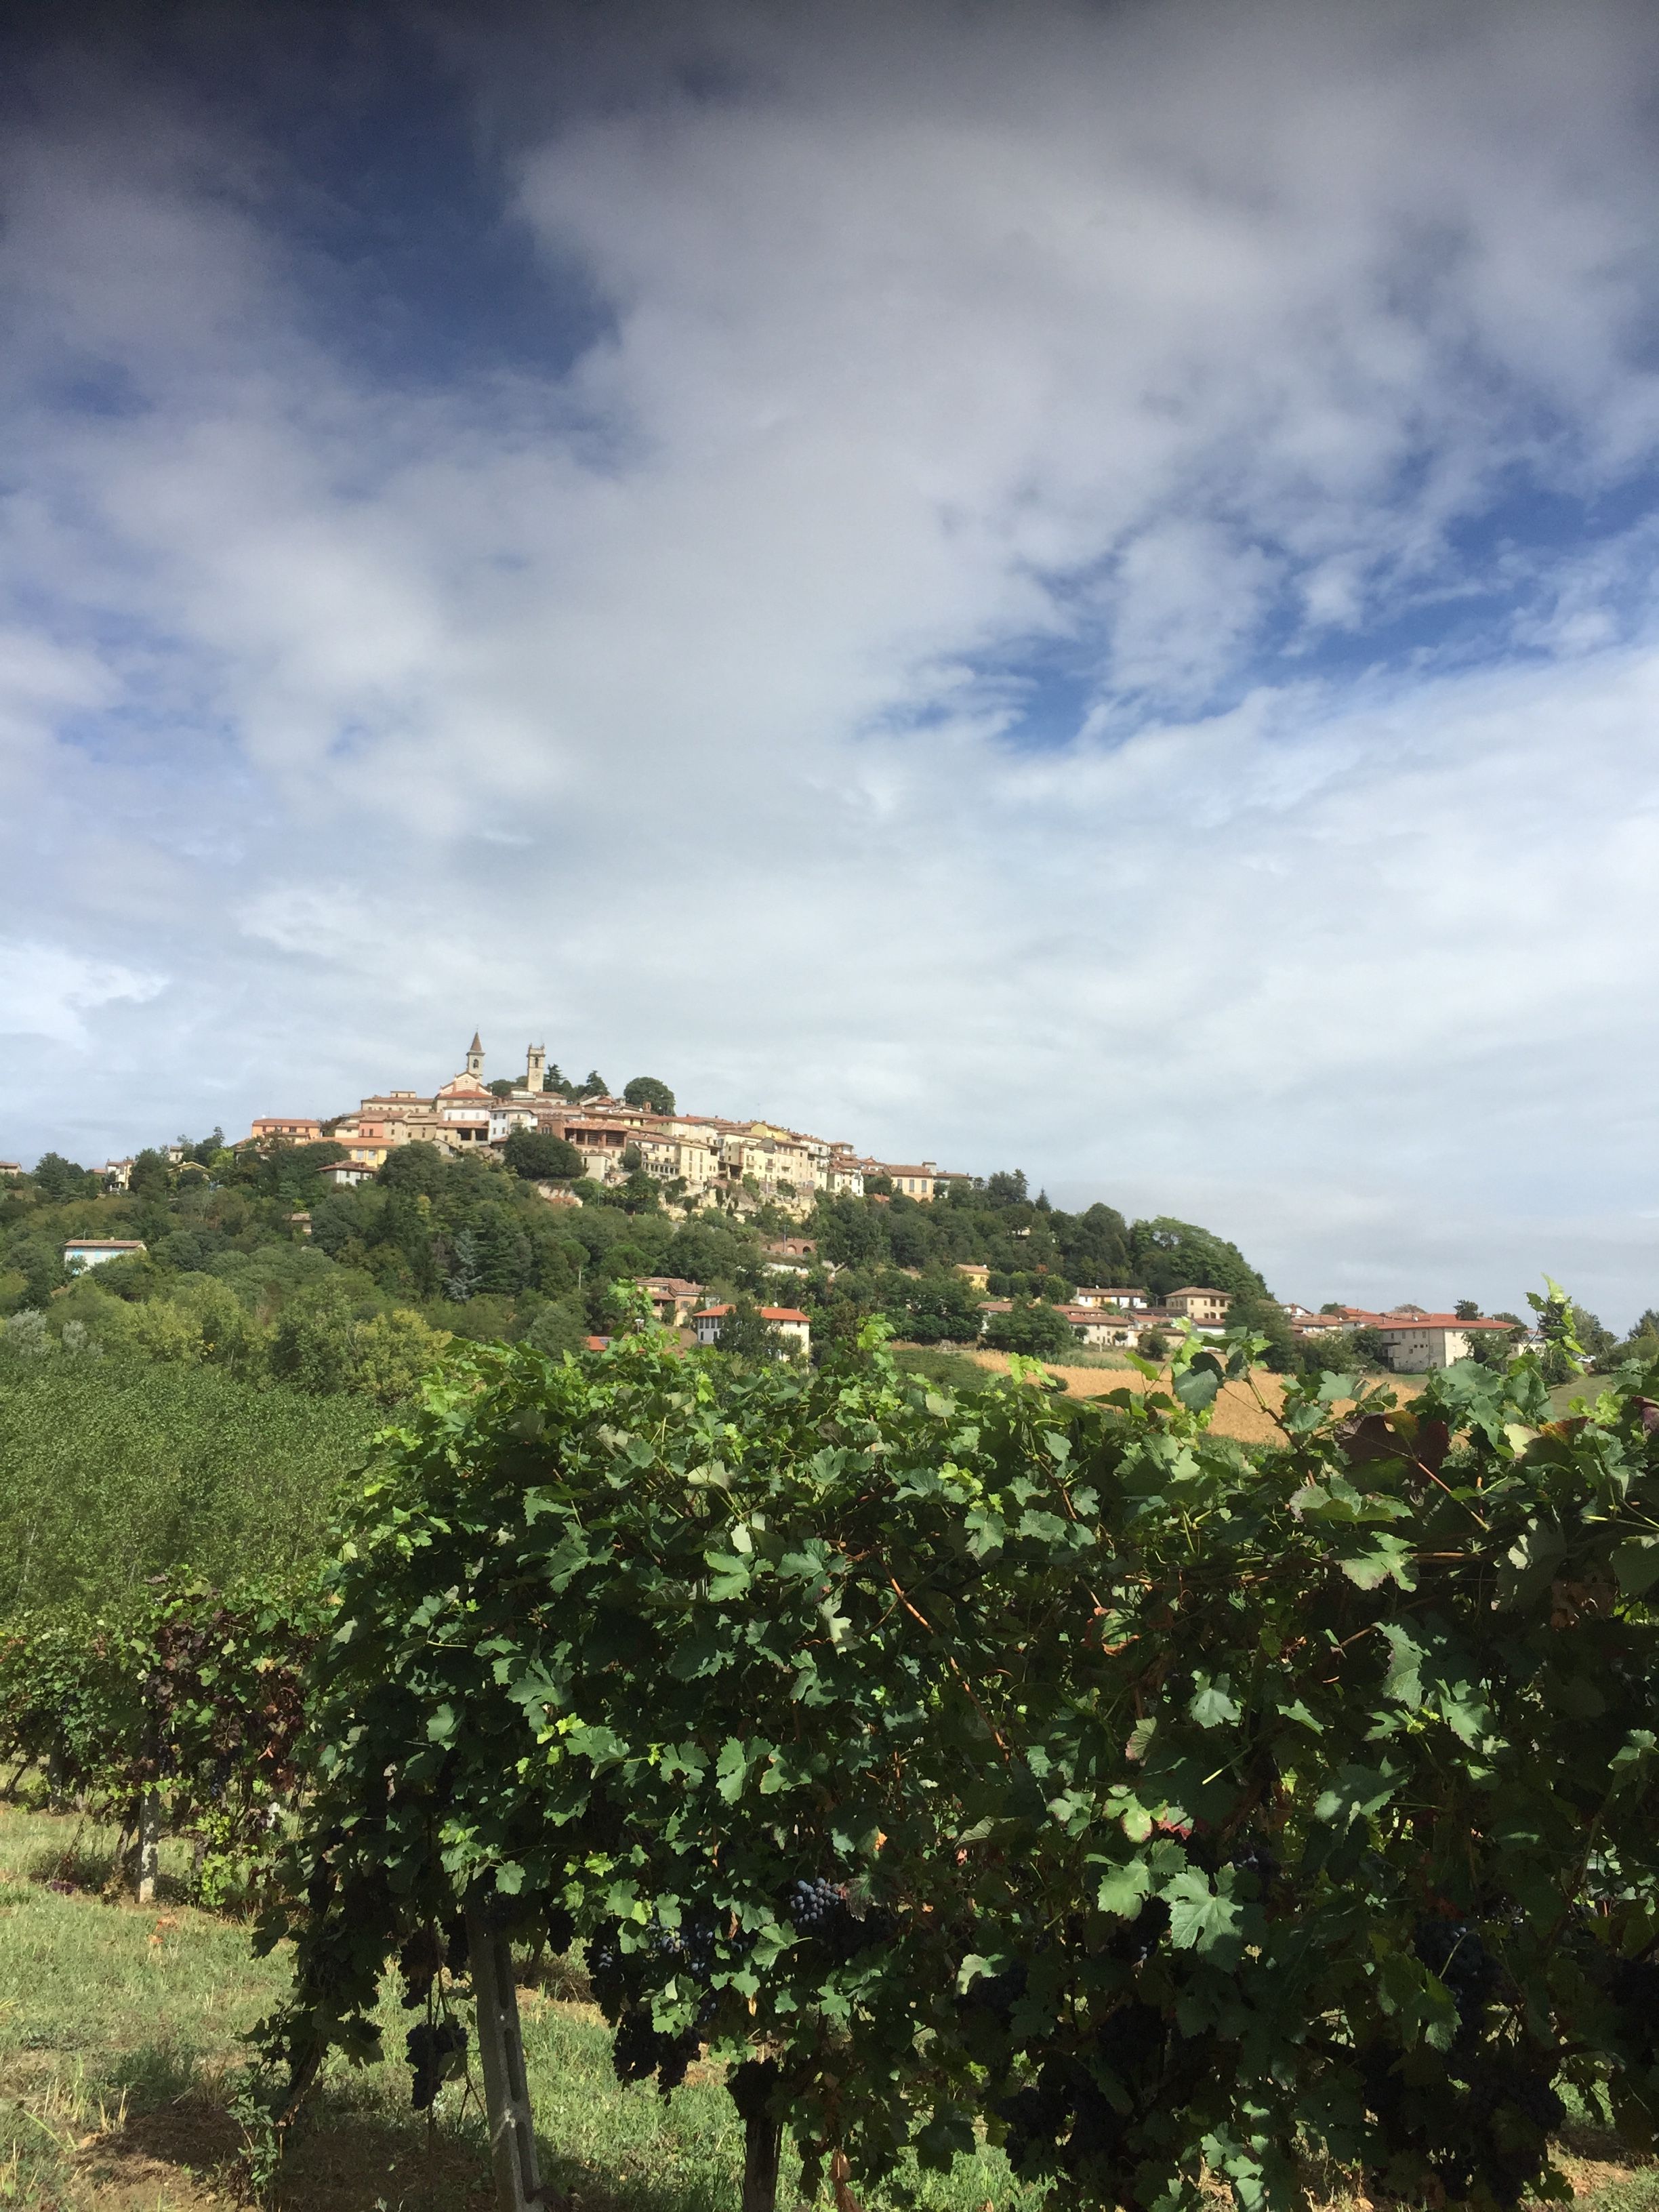 Monsterrato-Strade Bianche, ups and down in the Monferrato hills